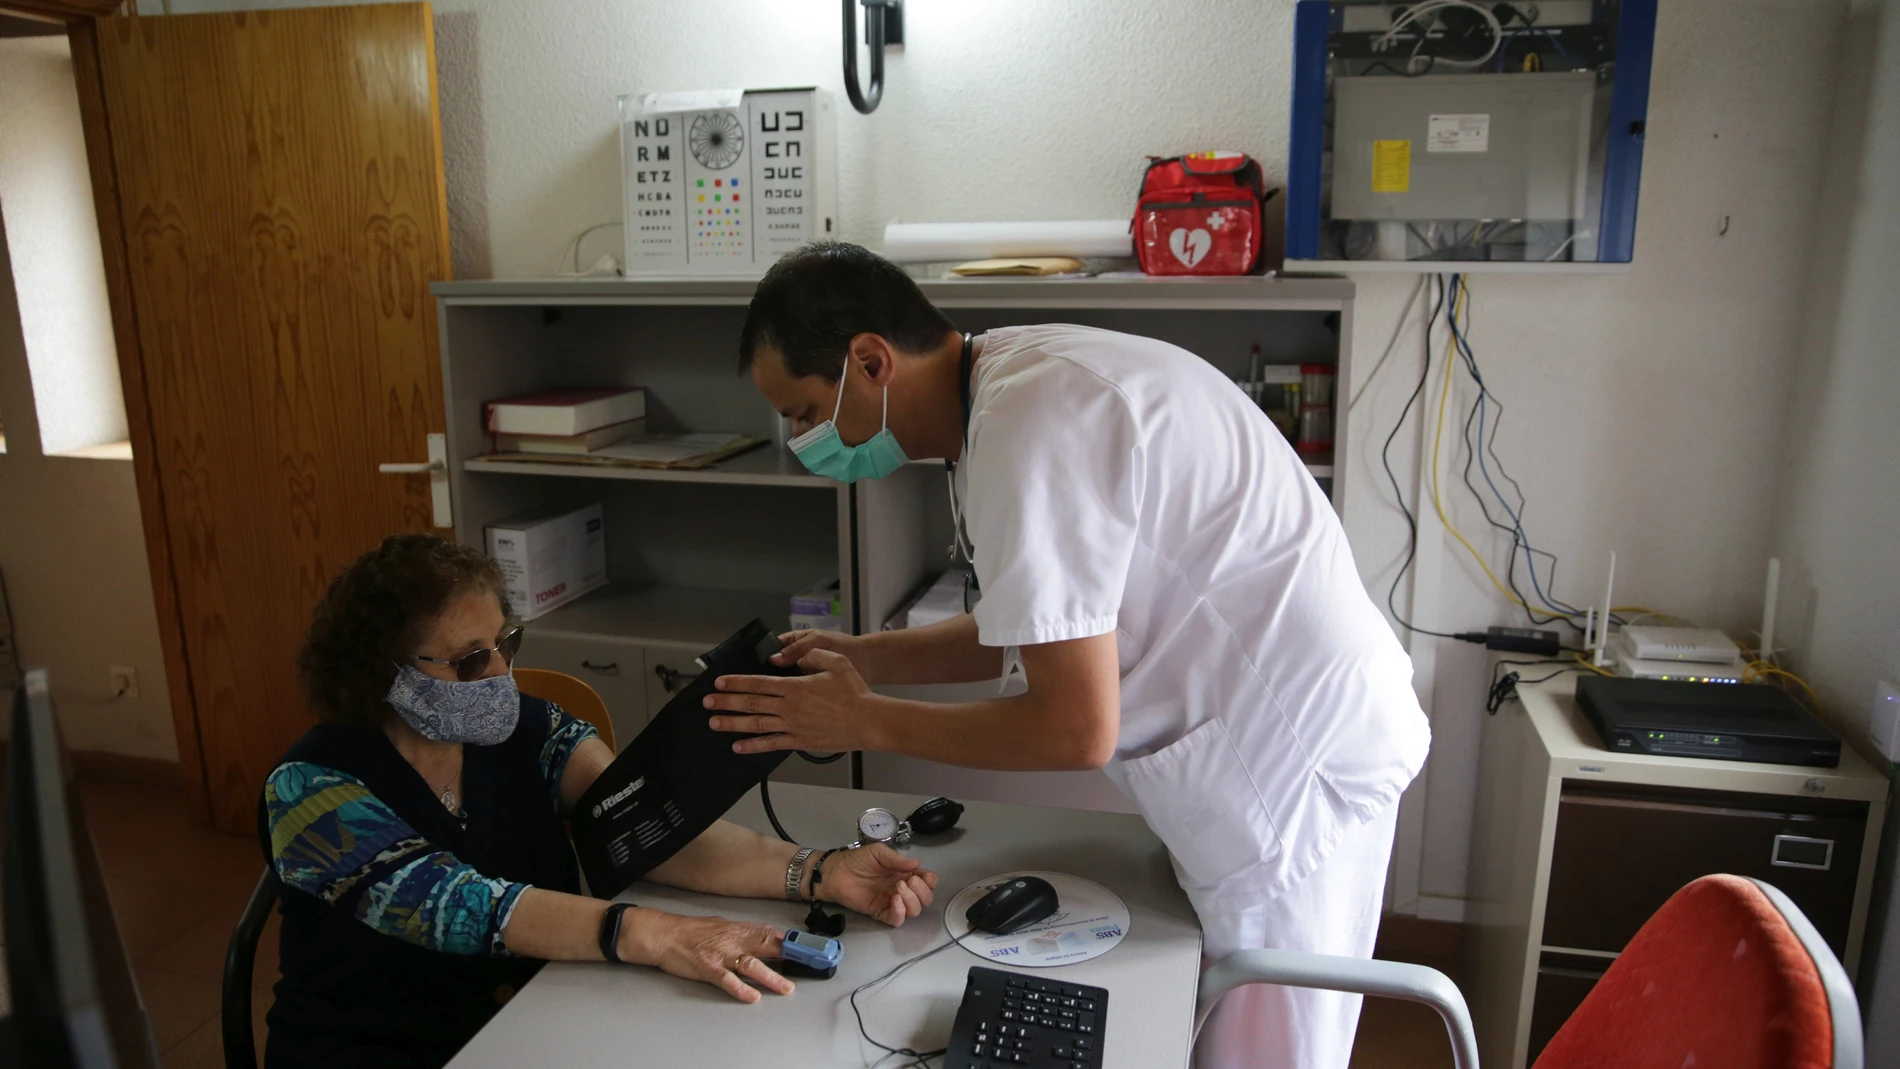 Atención a una paciente en el centro de salud de Buitrago del Lozoya en Madrid